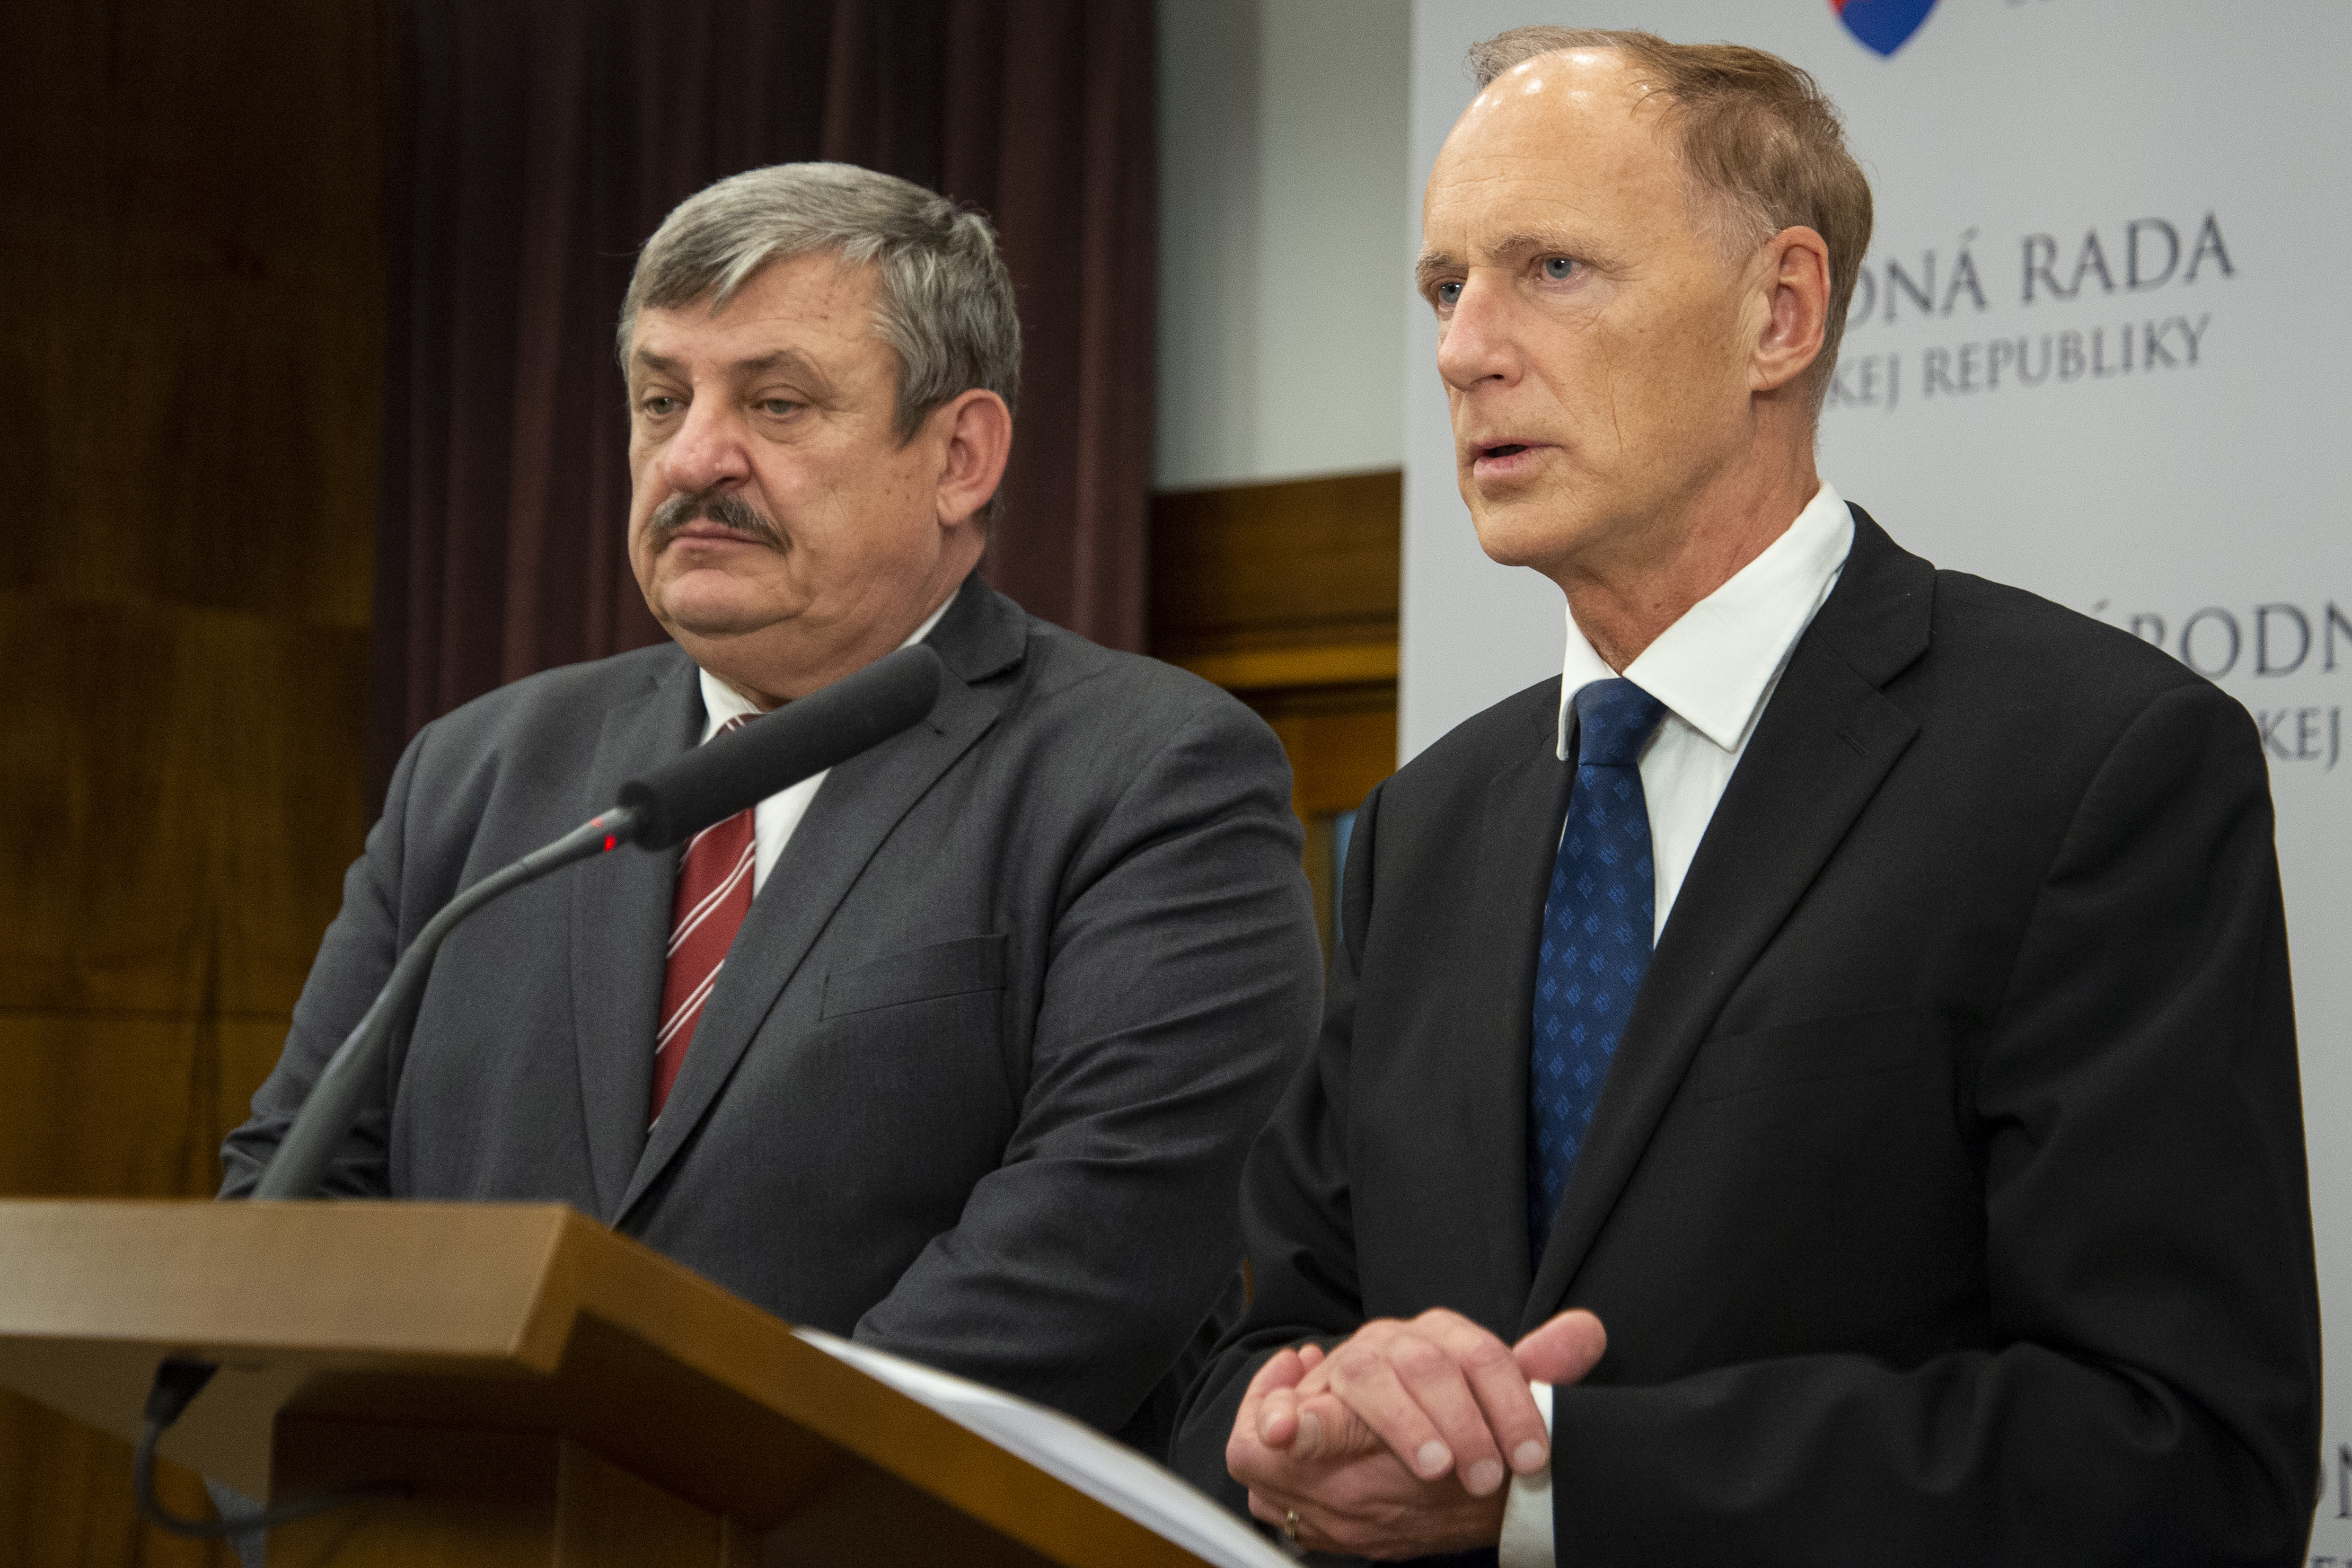 Anton Hrnko és Jaroslav Paška SNS-alelnök ragaszkodik ahhoz, hogy Marrákesben Szlovákia ne képviseltesse magát